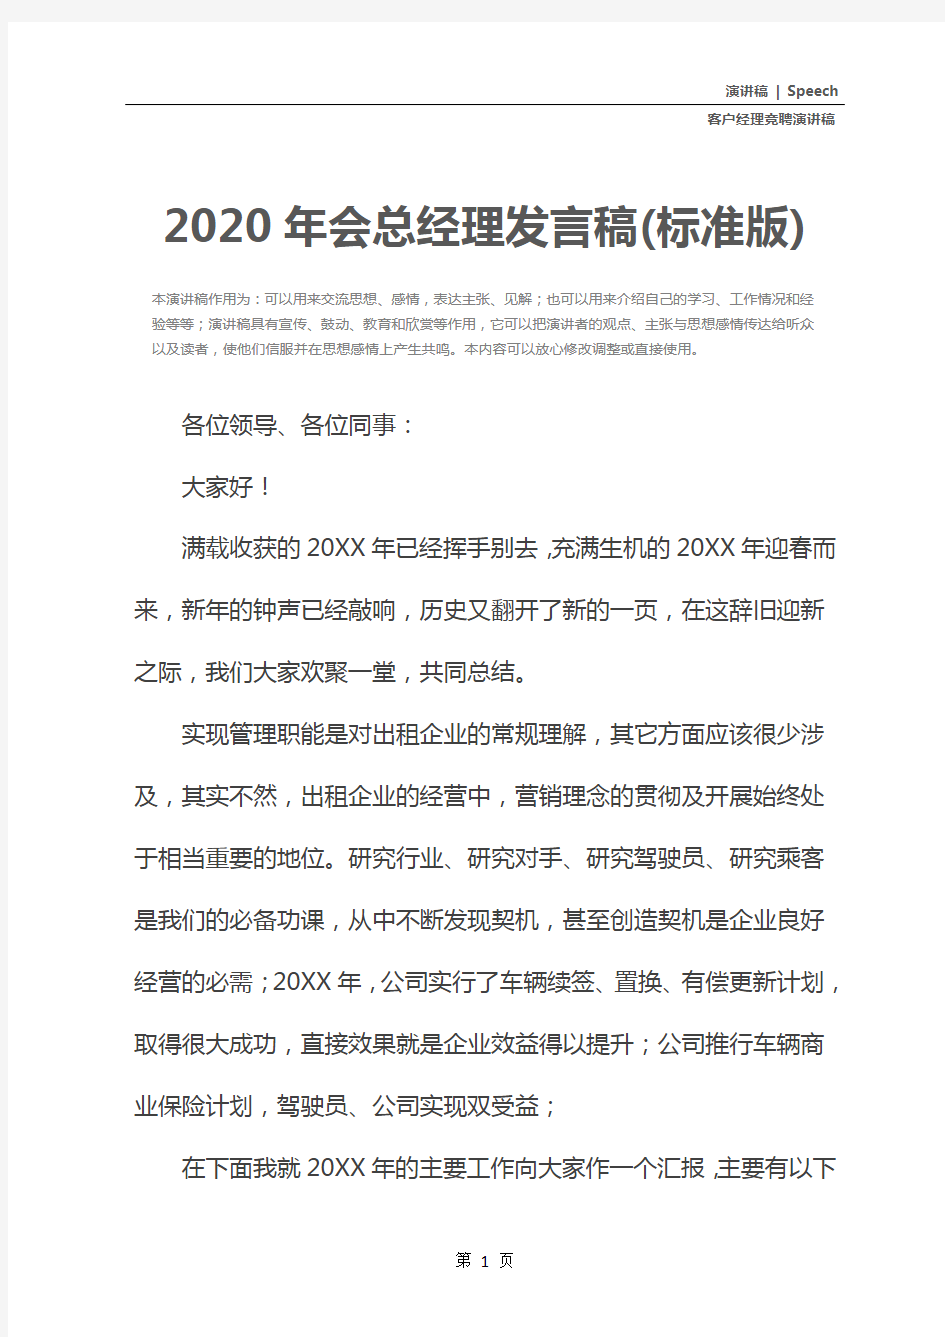 2020年会总经理发言稿(标准版)